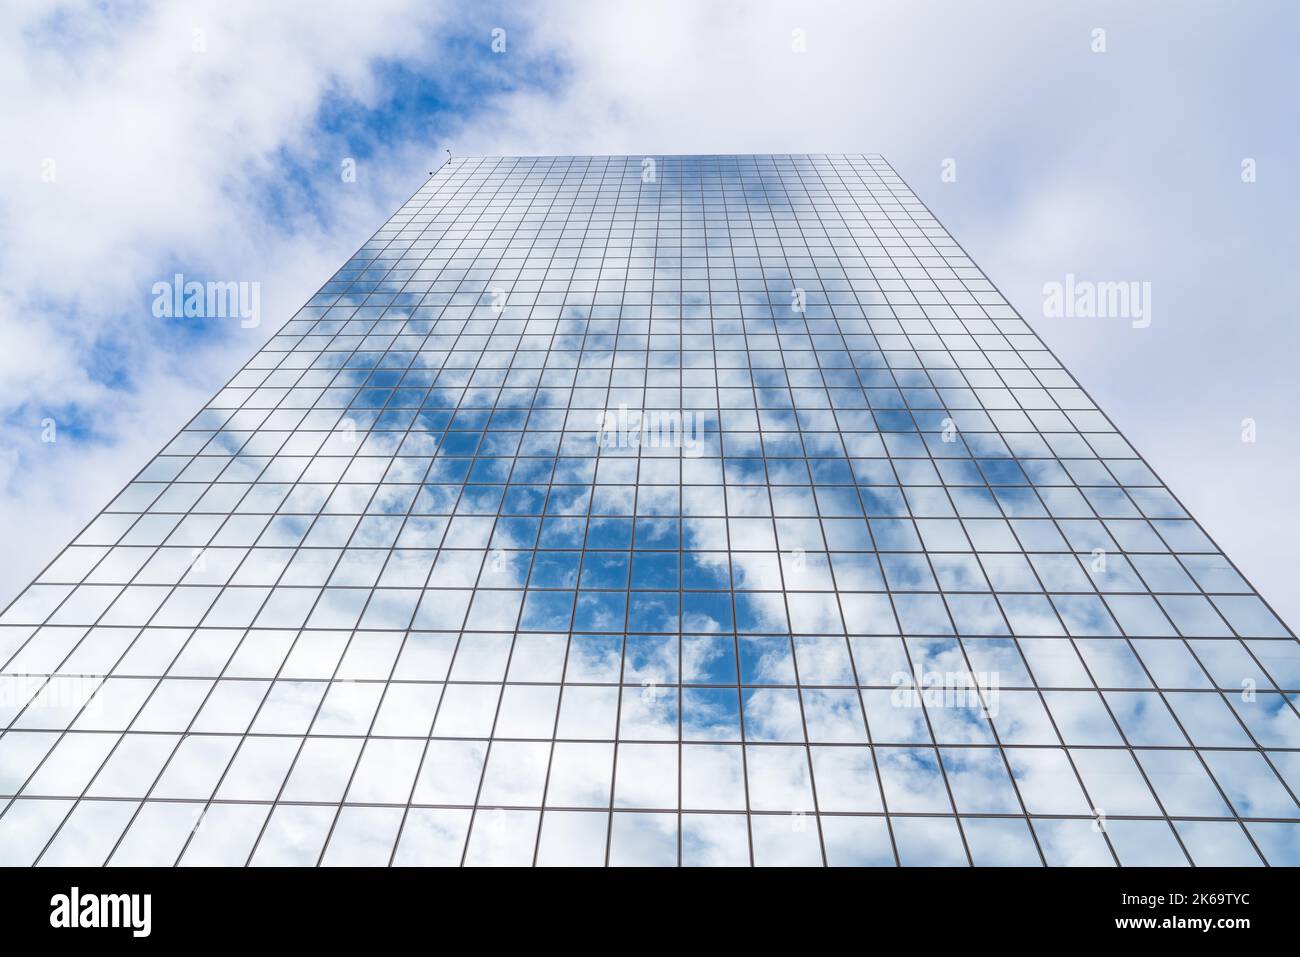 Les nuages et le ciel bleu se reflètent sur un grand gratte-ciel en verre miroir Banque D'Images